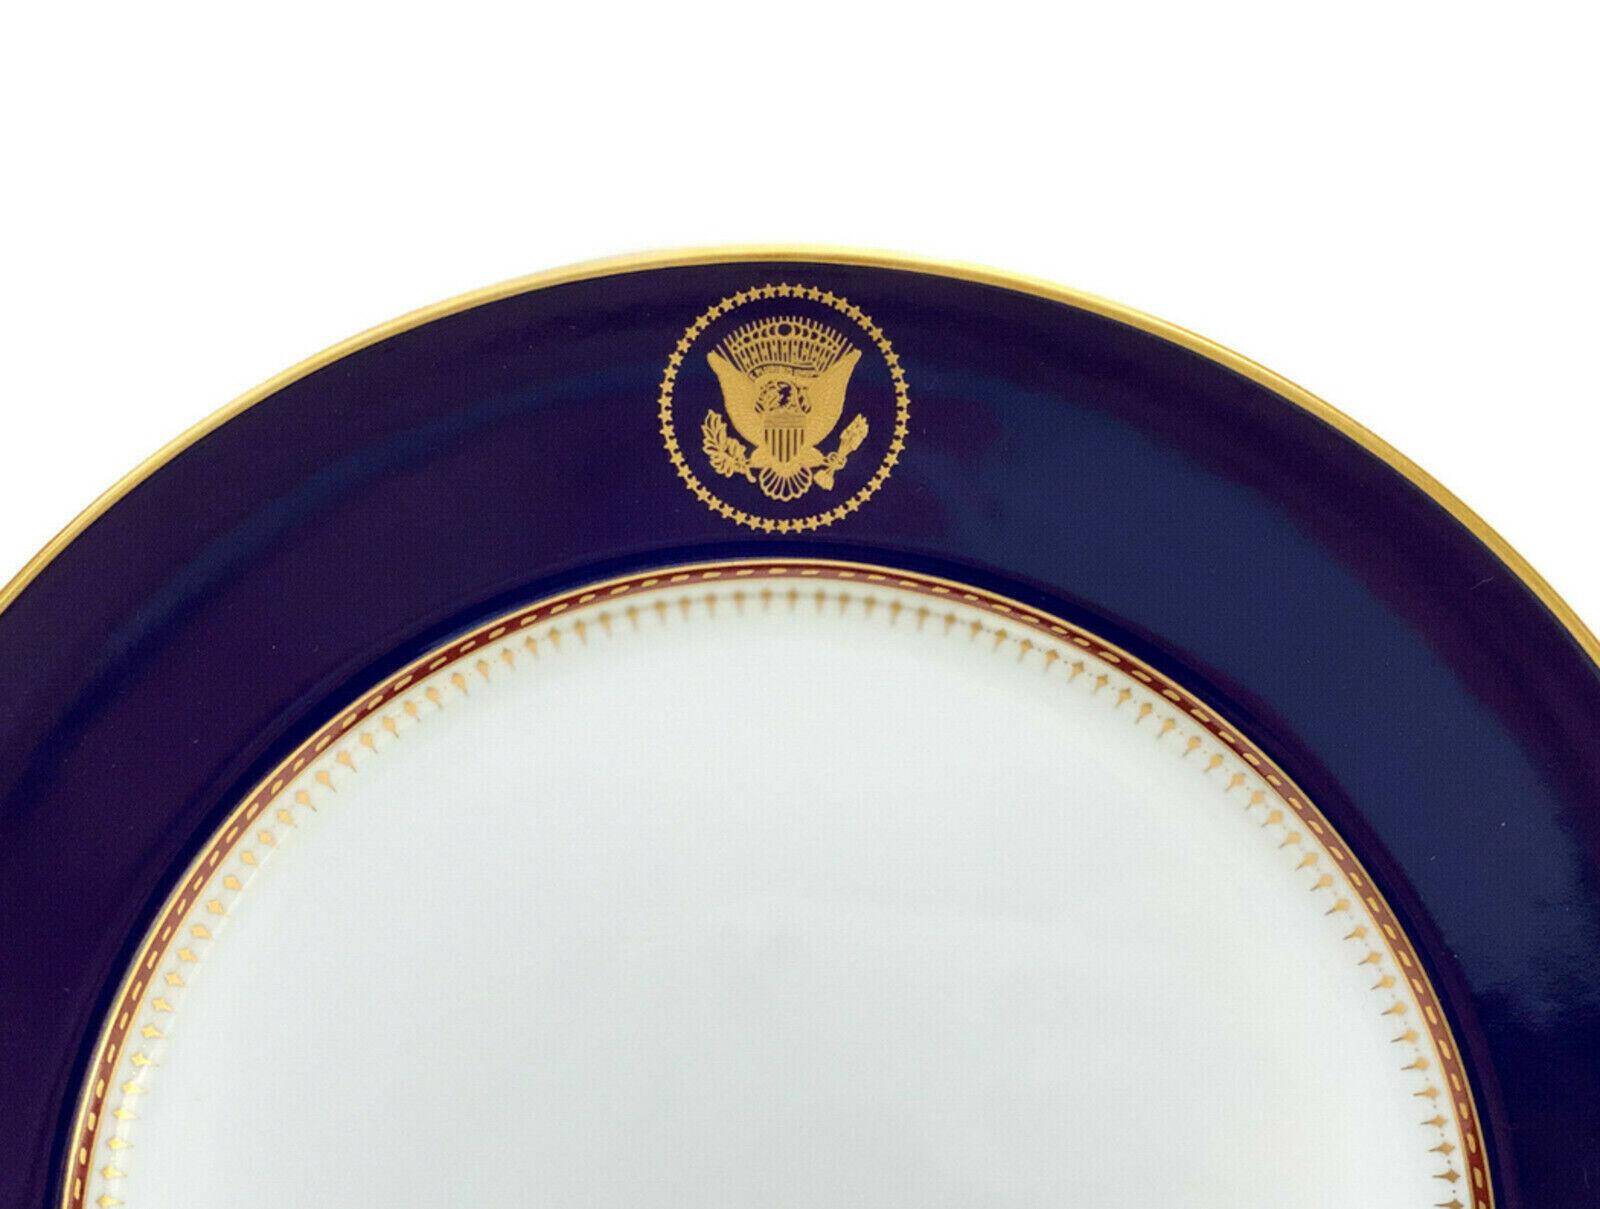 Assiette de la Maison Blanche de Fitz et Floyd Reagan, 1983

Un fond bleu cobalt et le Grand Sceau des États-Unis doré sur les bords centraux supérieurs. Accents dorés sur les bords et le bord intérieur avec un motif piqué, pointillé et géométrique.